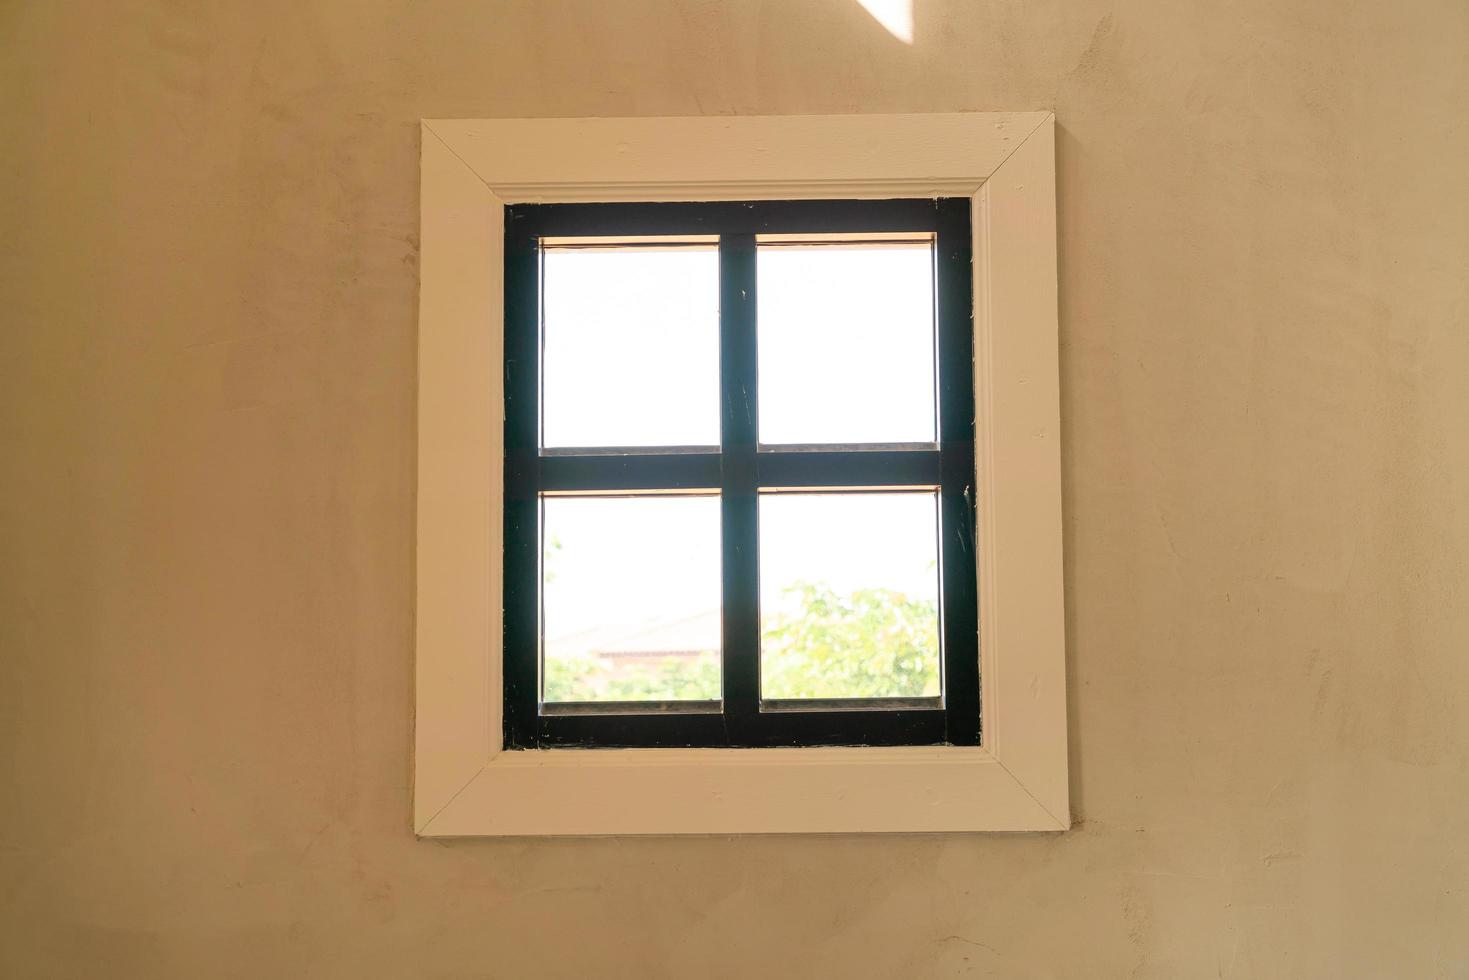 Fenster an der Wand mit Sonnenlicht und Kopienraum foto